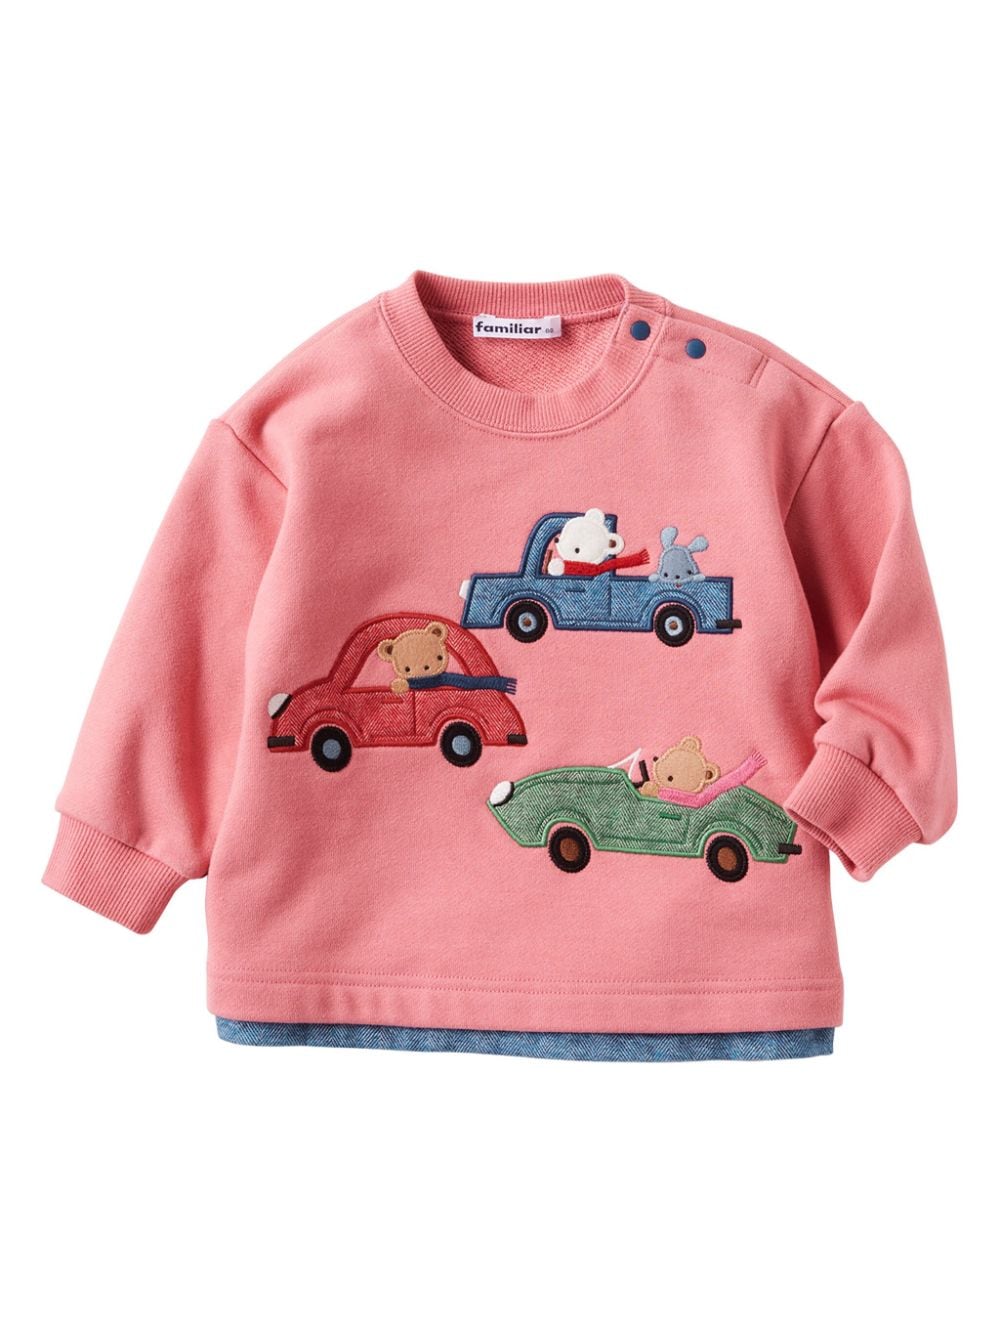 Familiar Kids' Embroidered-design Cotton Sweatshirt In Neutral